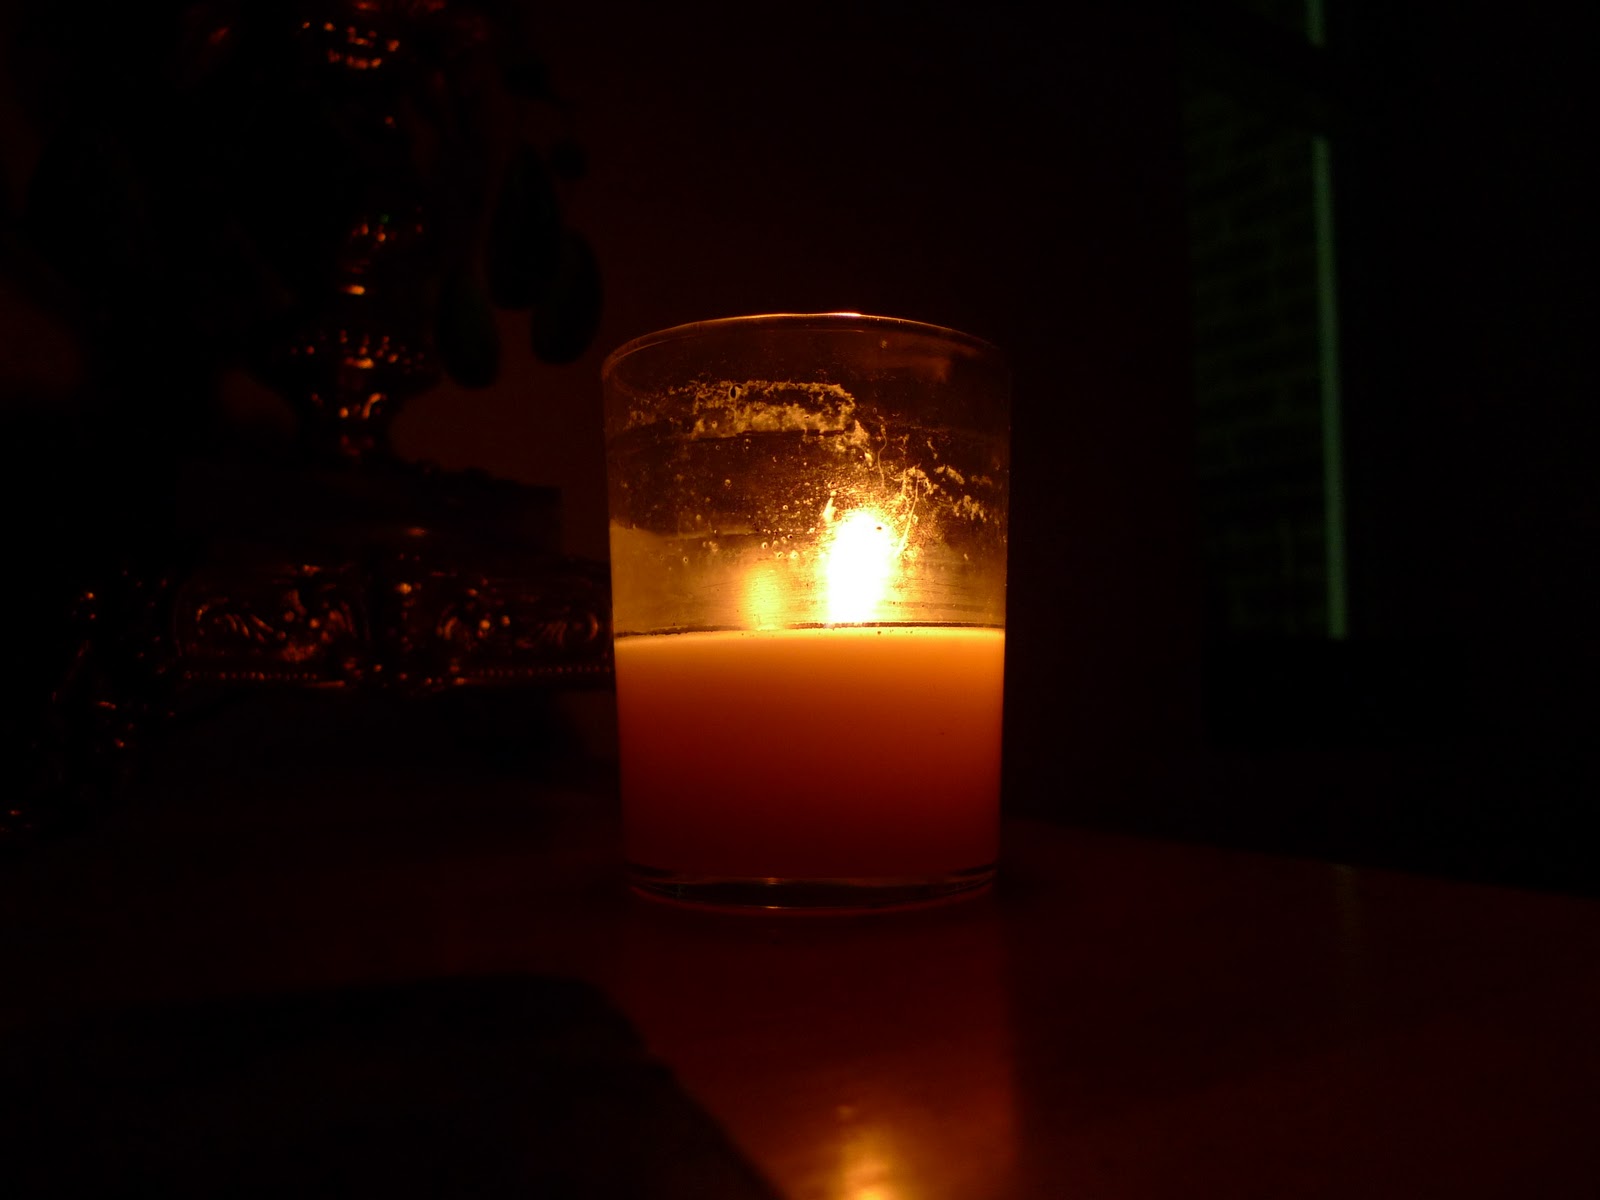 http://3.bp.blogspot.com/-_Z14Vk7sUFc/TwRkBMihjlI/AAAAAAAAJVE/ssnaFi8v2eg/s1600/candle+light+_20.jpg